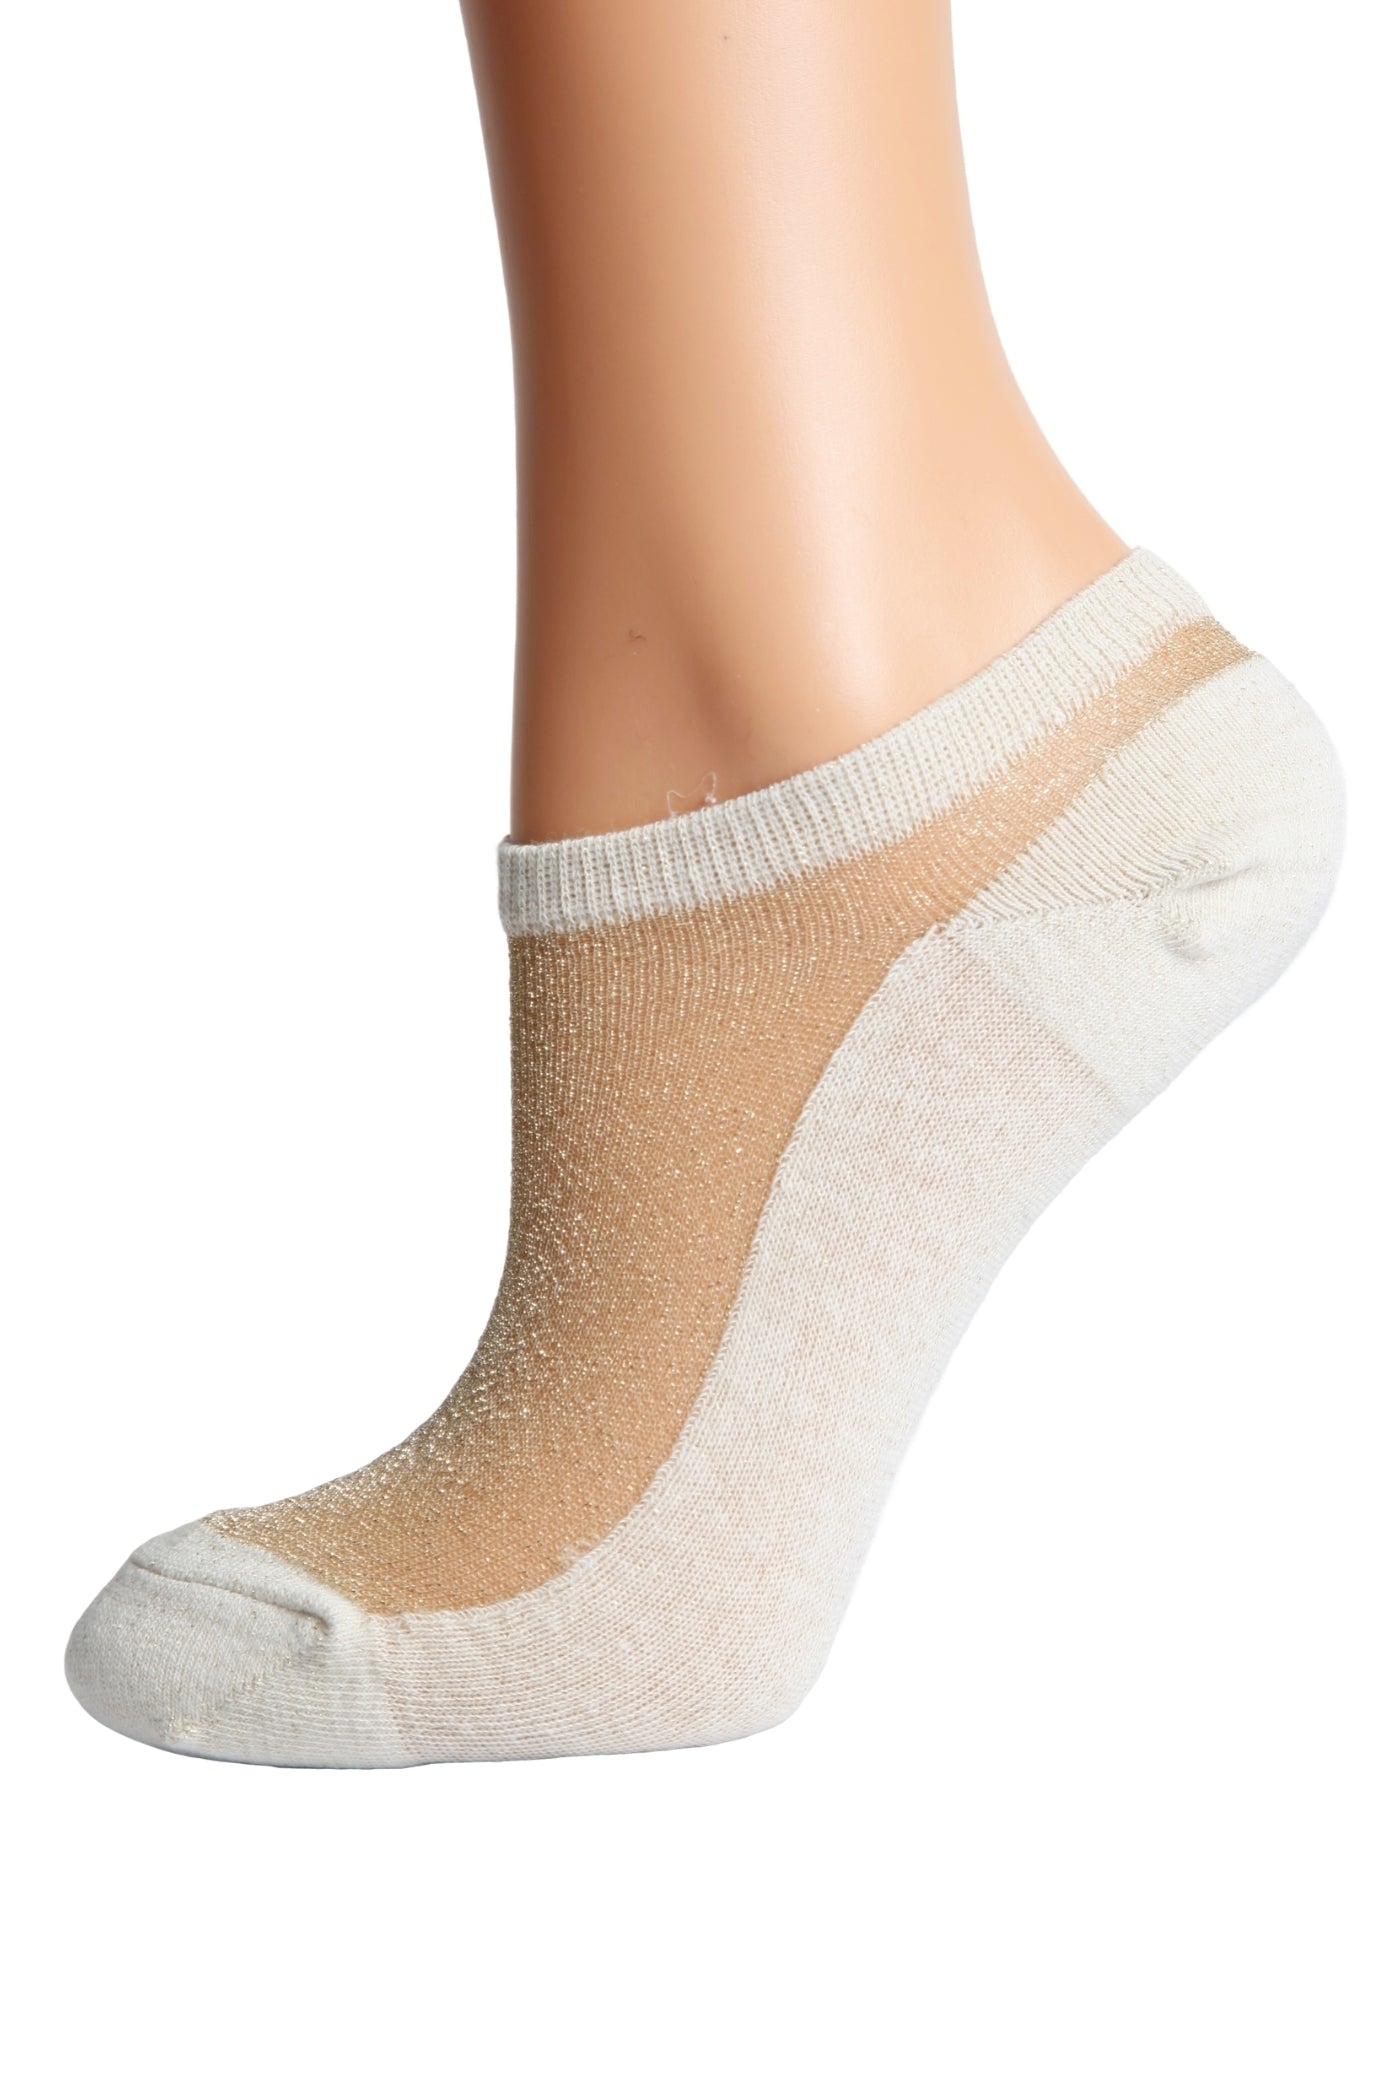 LUCINA beige glittery socks for women